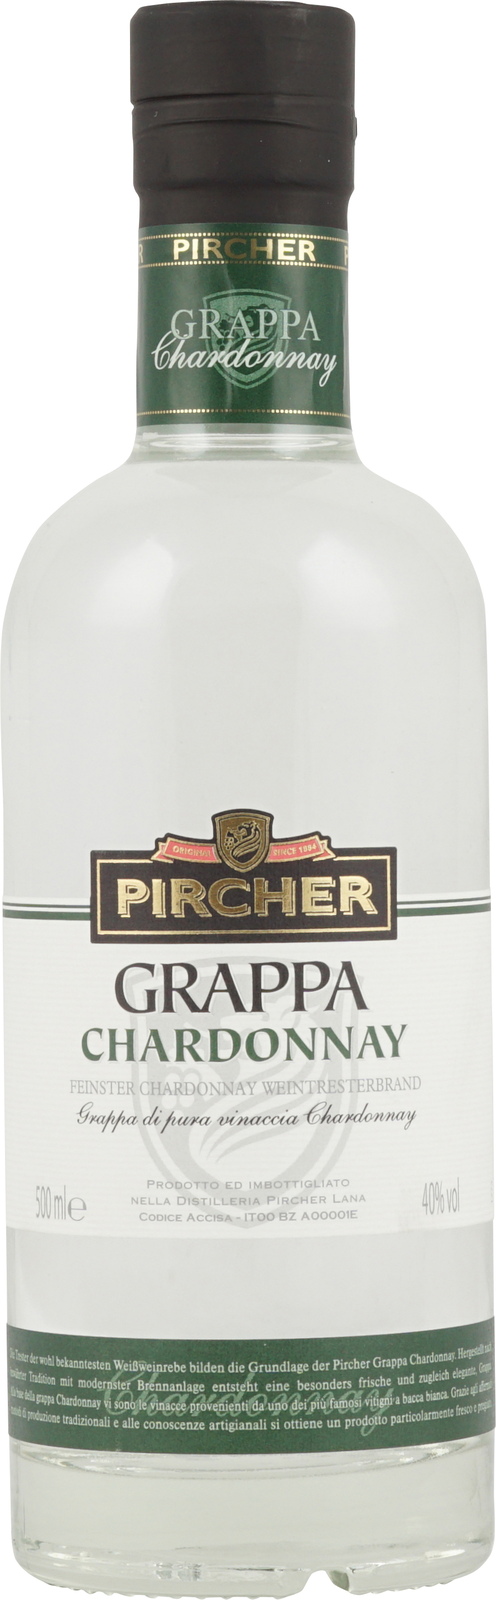 Pircher Grappa Chardonnay in 500 ml Flasche mit 40% Vol